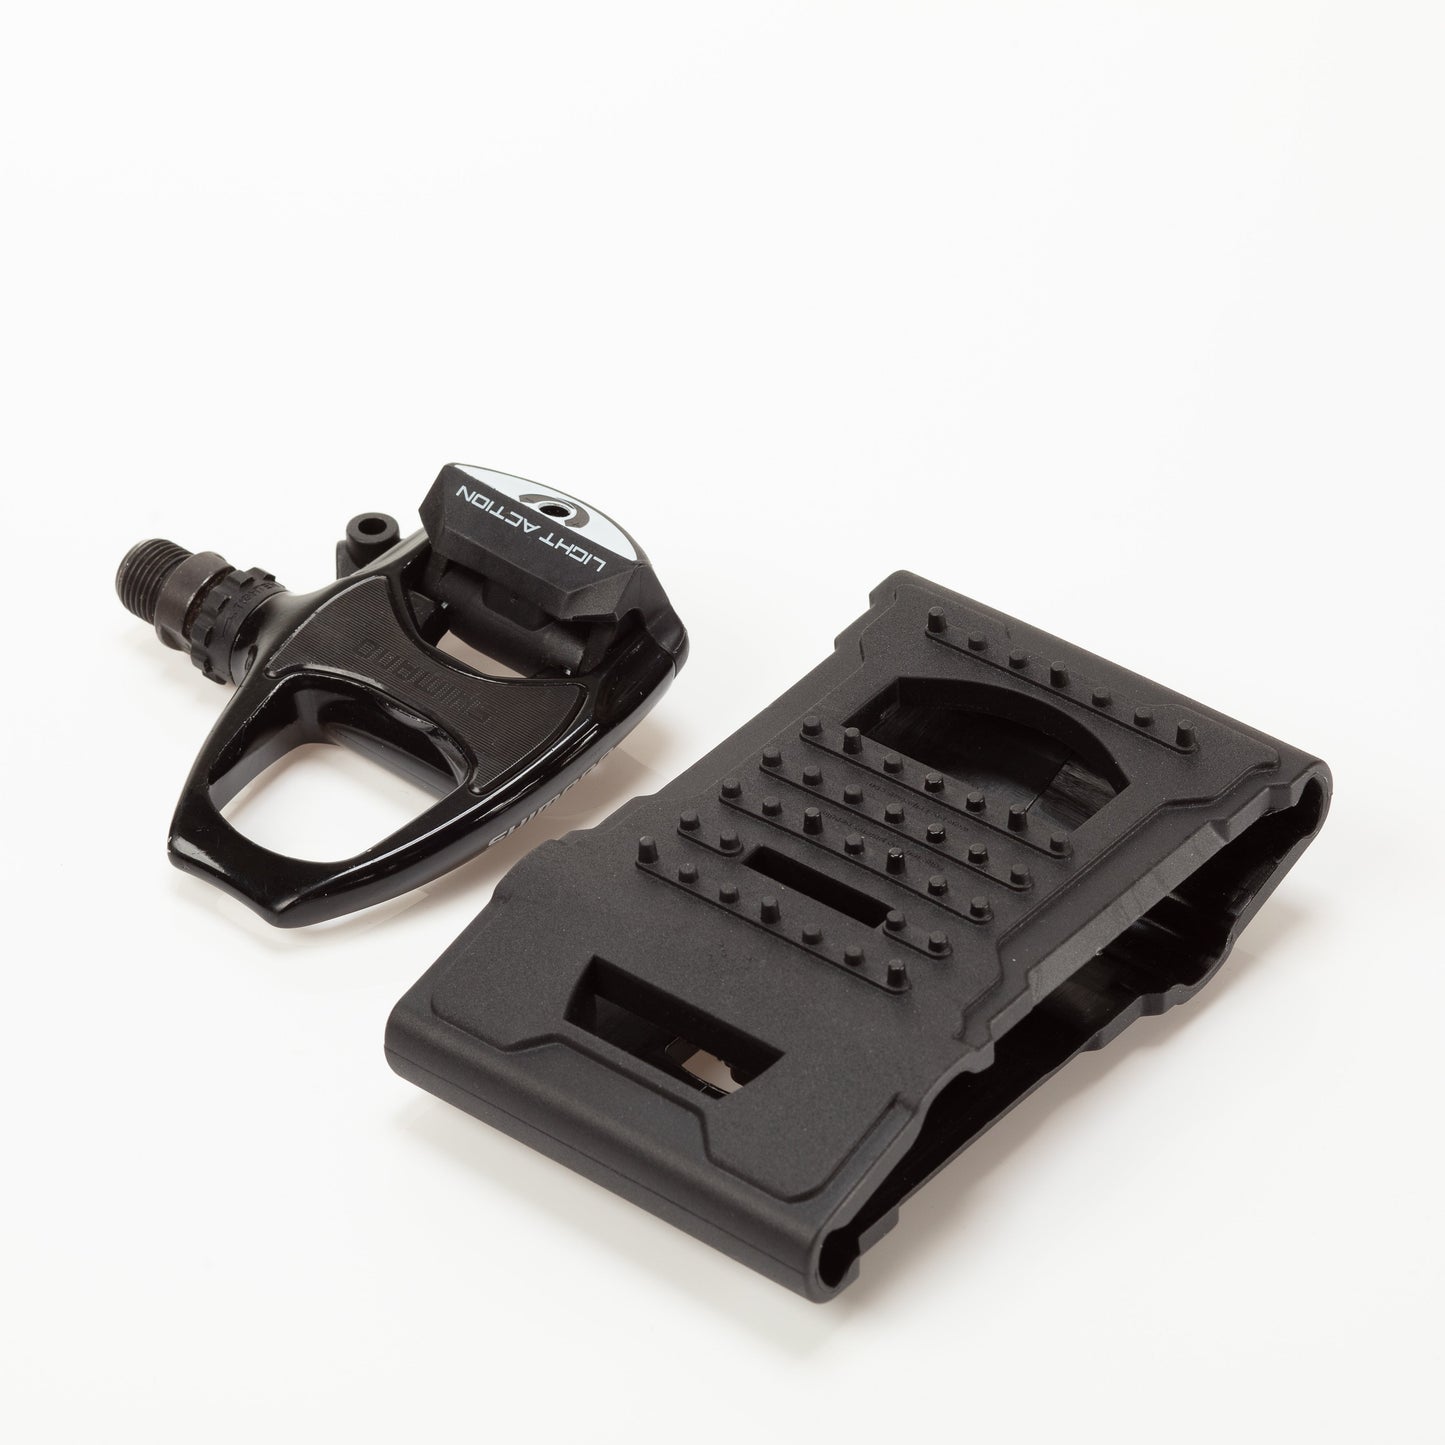 Pocket Pedals（ポケットペダル）SPD/SPD-SL両面対応 ビンディングペダルアダプター